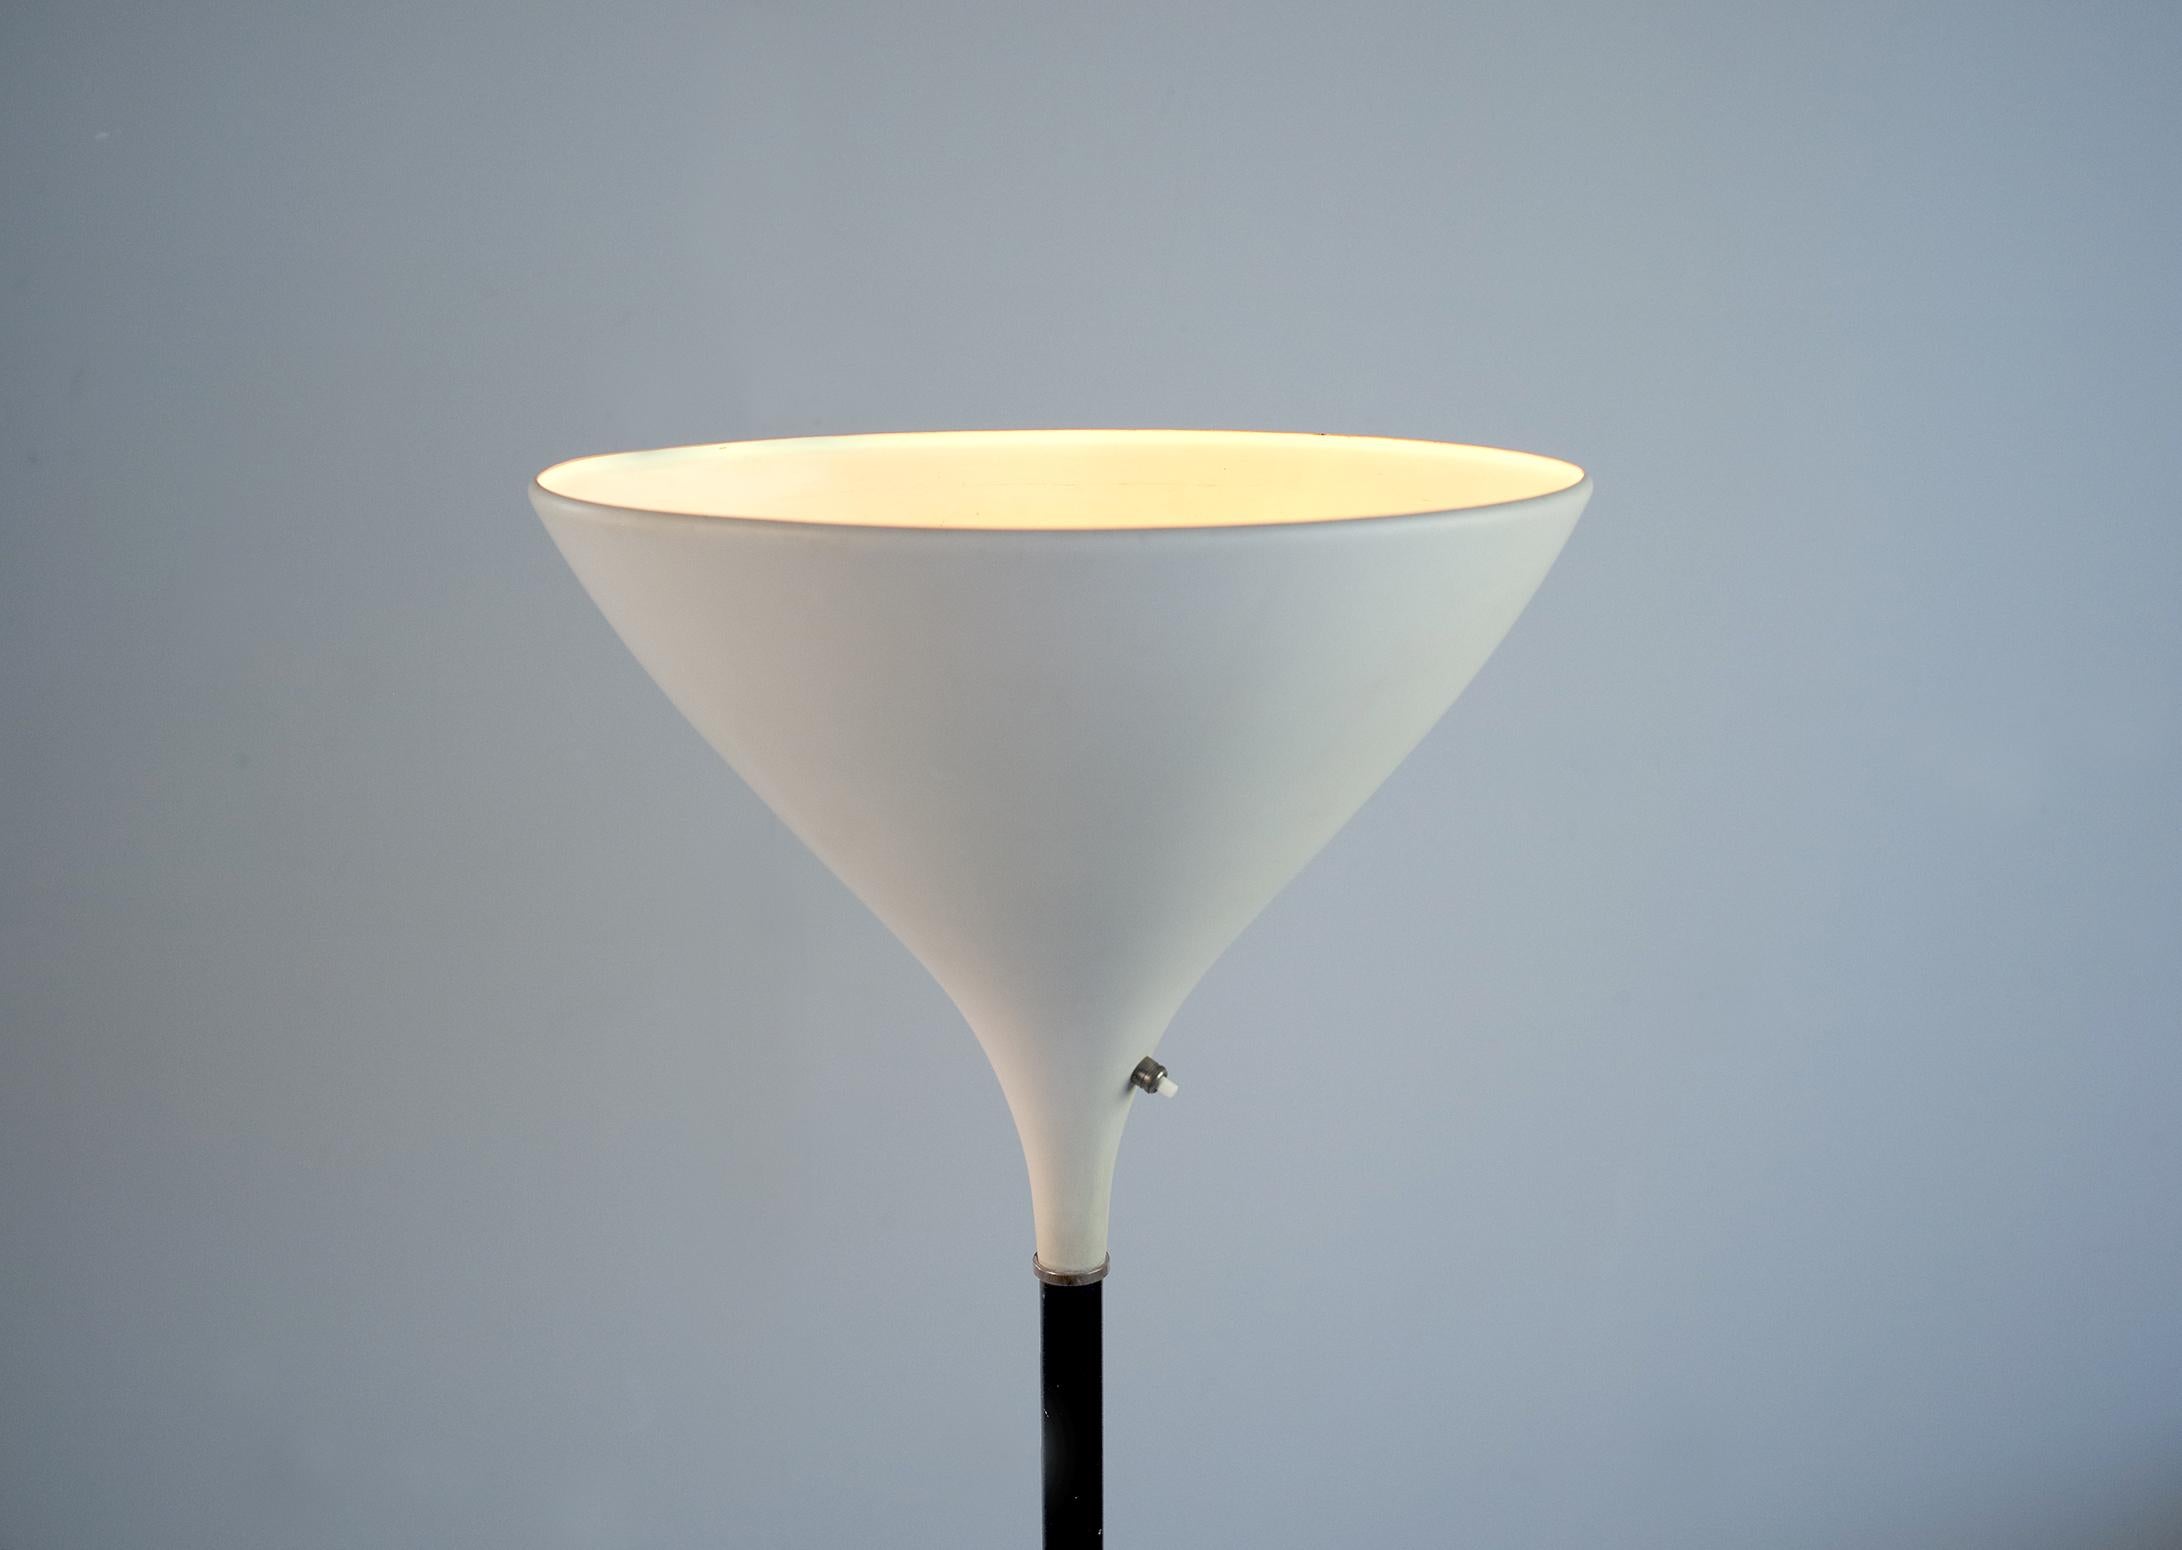 Sehr seltene Lampe für indirekte Beleuchtung, herausgegeben von Stilnovo House, Italien 1950. Bruno Gatta ist der Gründer von Stilnovo im Jahr 1946.
Sockel aus weißem Marmor, Korpus aus mattschwarz lackiertem Metall, verziert mit Messingringen,